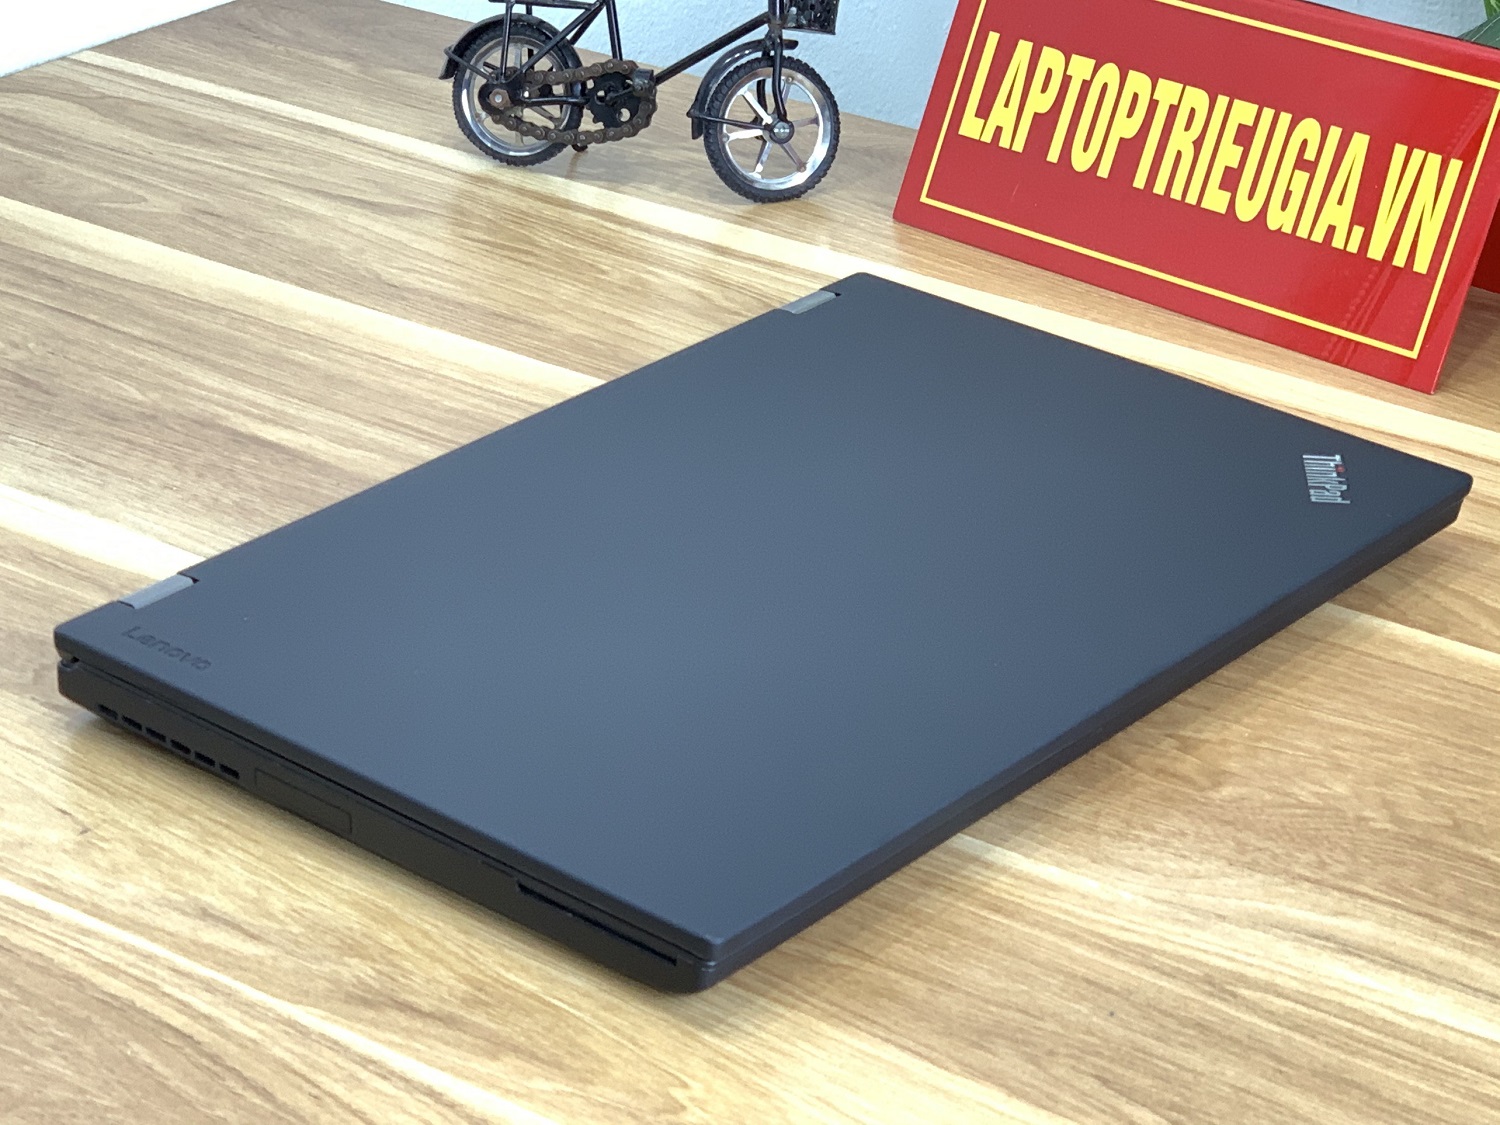 Laptop Lenovo ThinkPad P51 i7-7820HQ| RAM 16GB| SSD 512GB| Quadro M1200M | 15.6 FHD